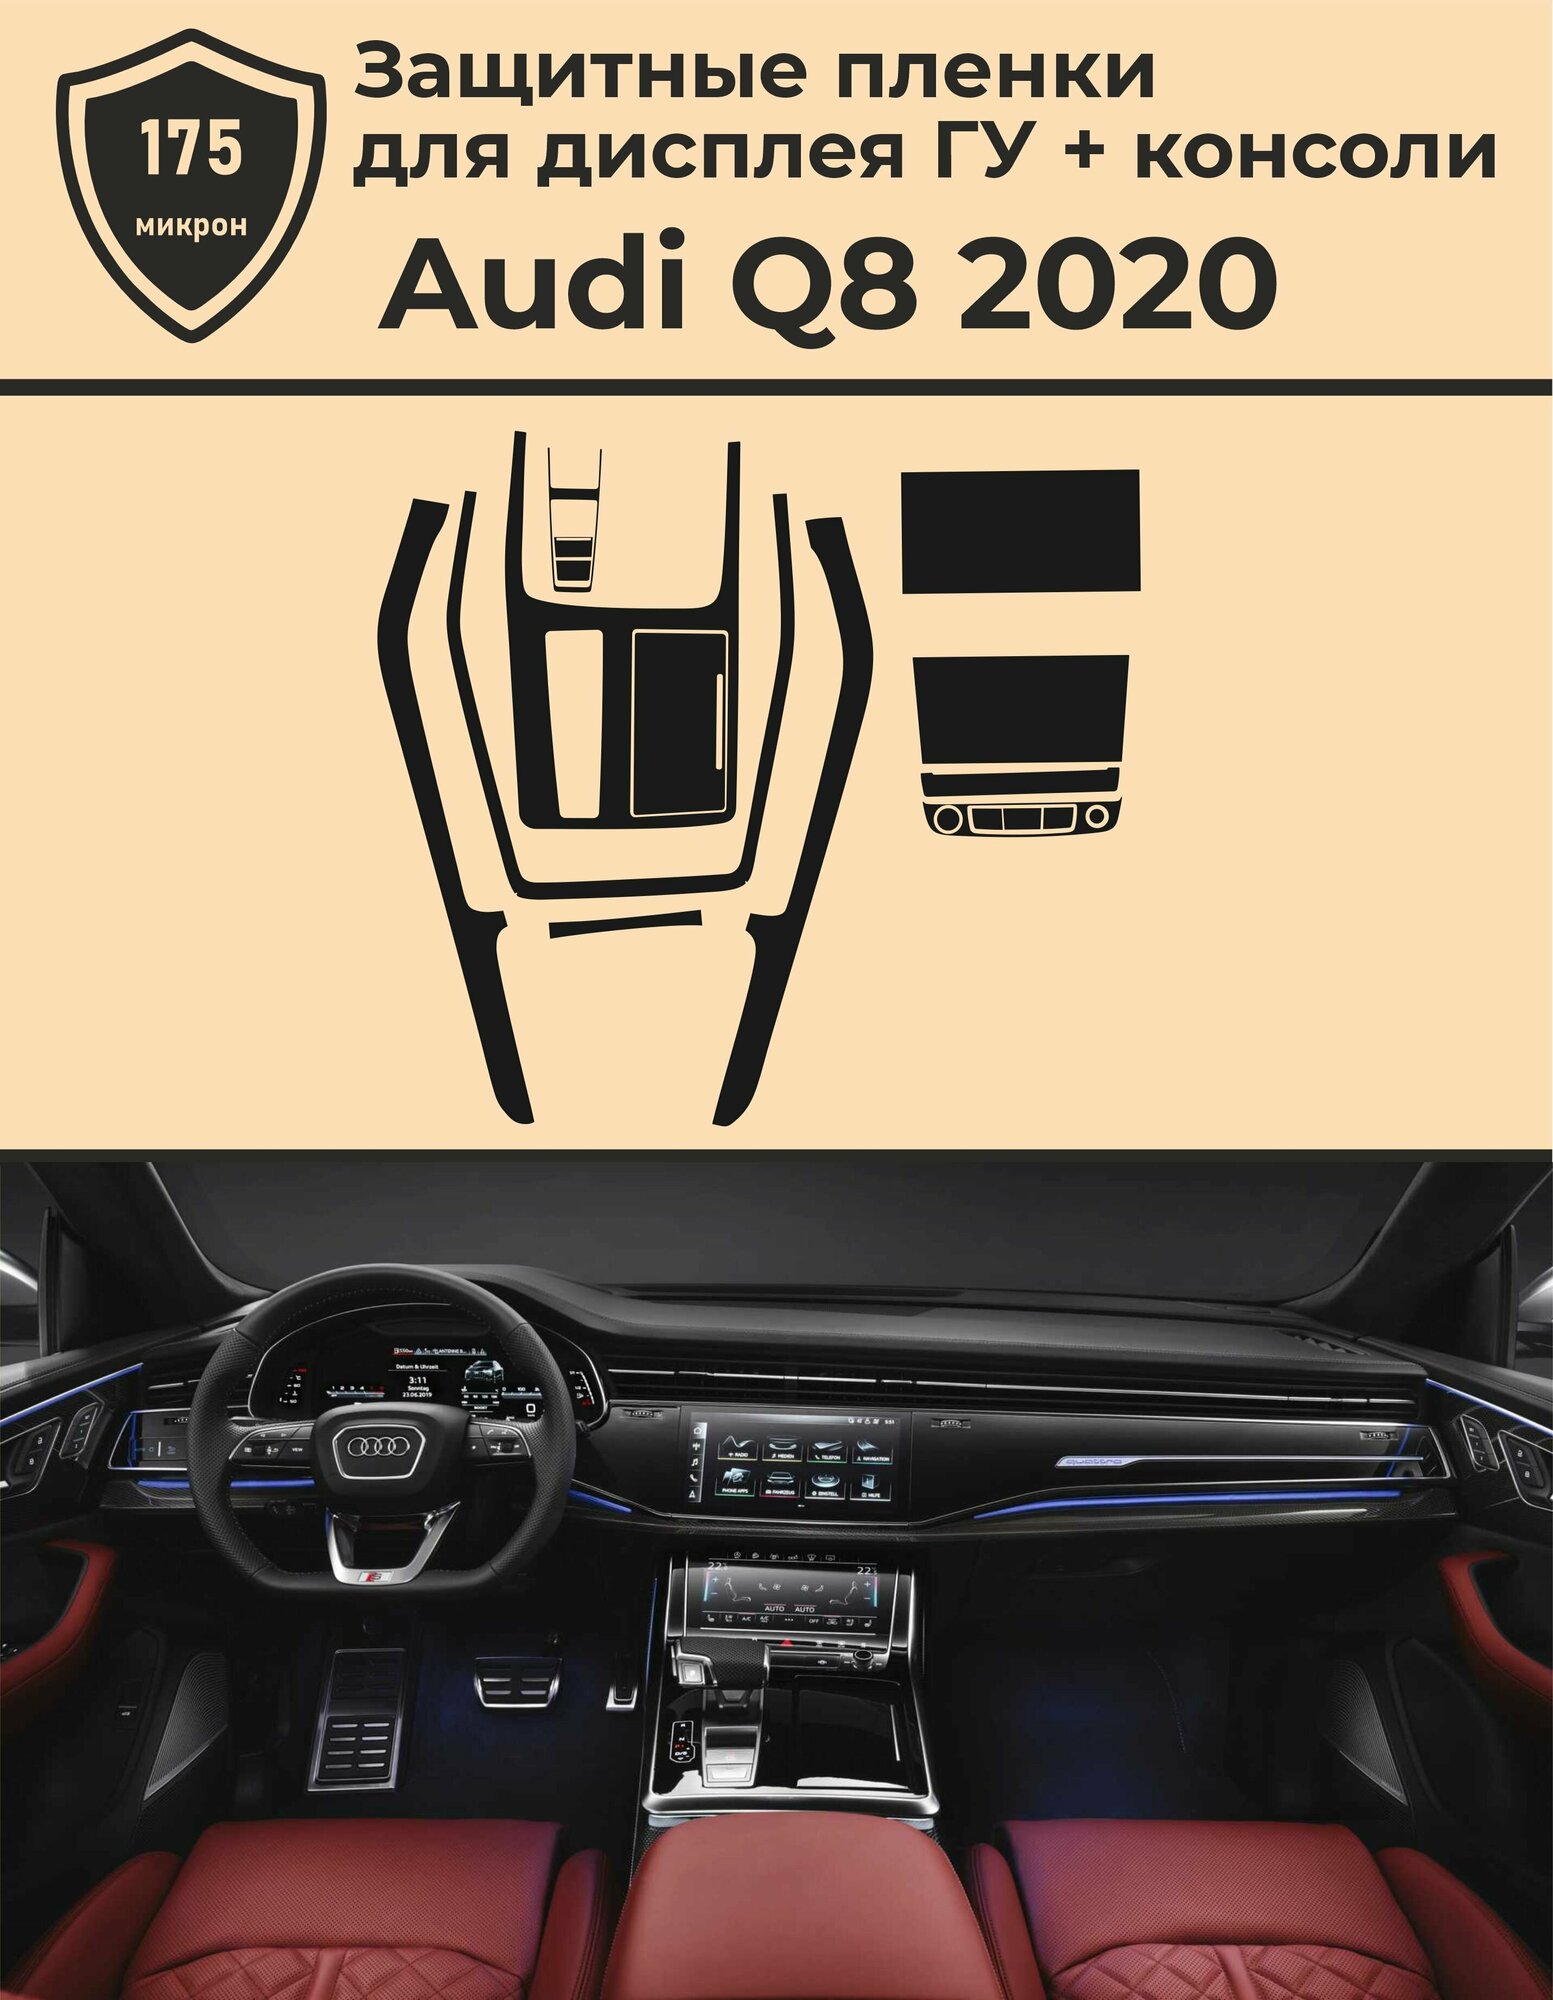 Audi Q8/Комплект защитных пленок для дисплея ГУ и консоли